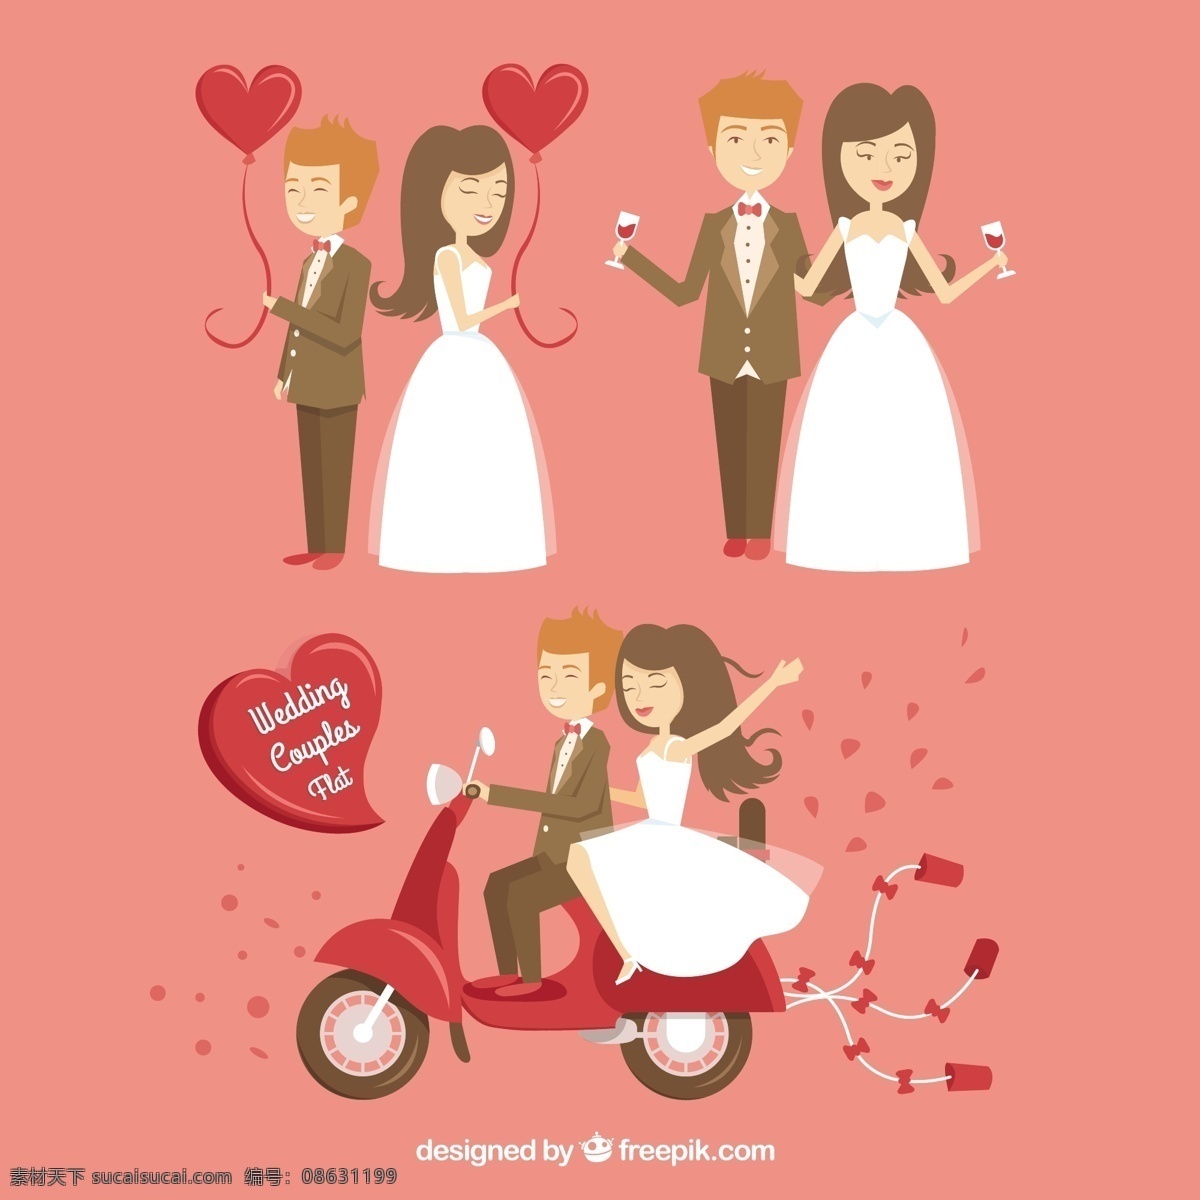 幸福 新婚 夫妇 婚礼 婚礼邀请 心 方 卡 爱酒 庆祝 高兴 摩托车 纸屑 玻璃 新娘礼服 西装 气球 婚姻